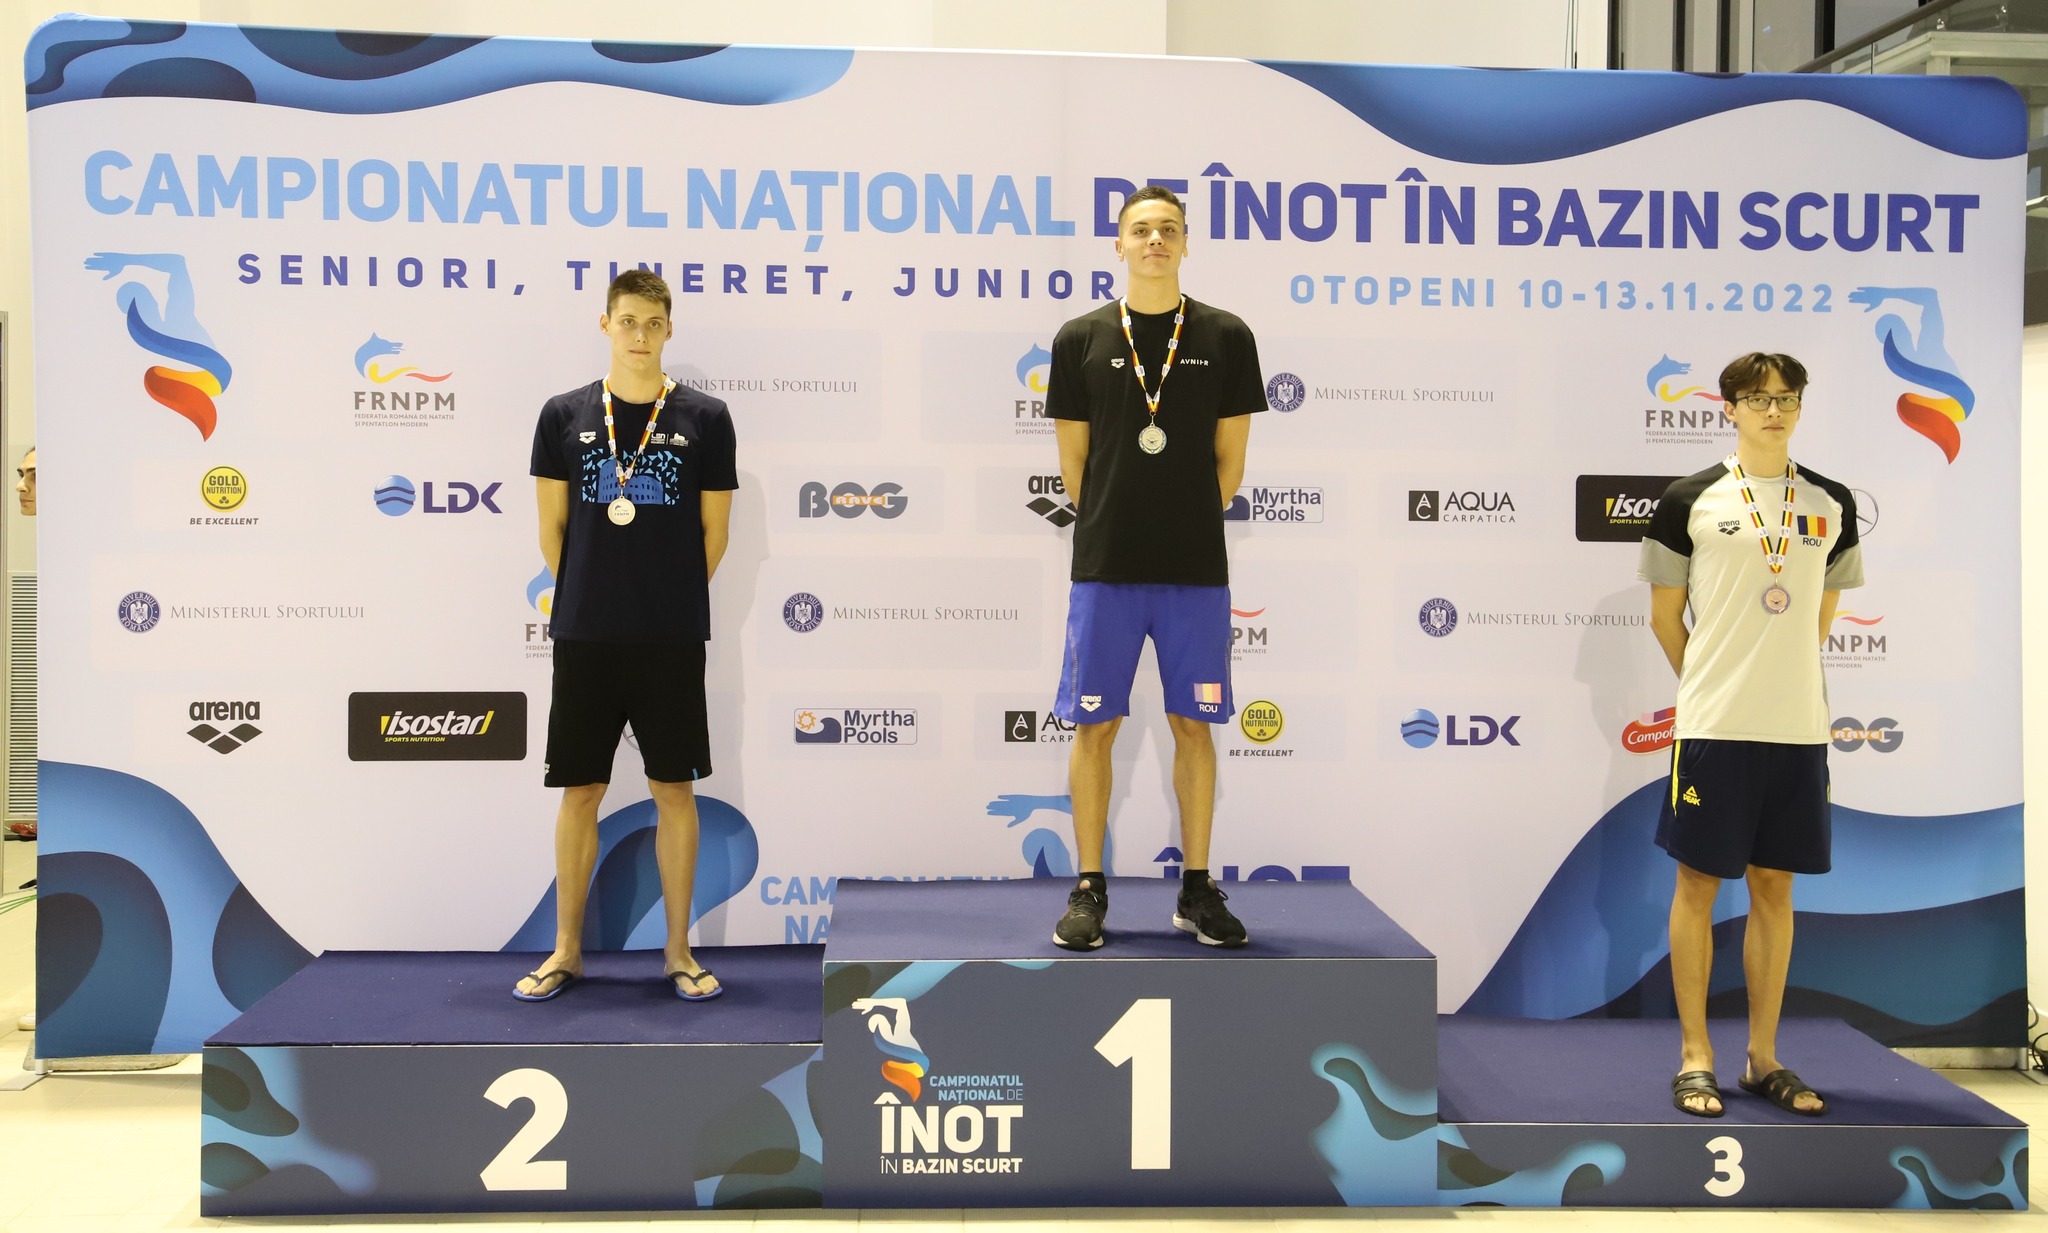 Mihai Gergely, legitimat la CSM Cluj-Napoca, a luat argint la proba de 200 metri liber la campionatul național de înot, în spatele campionului David Popovici/ FOTO: FRNPM/ Facebook